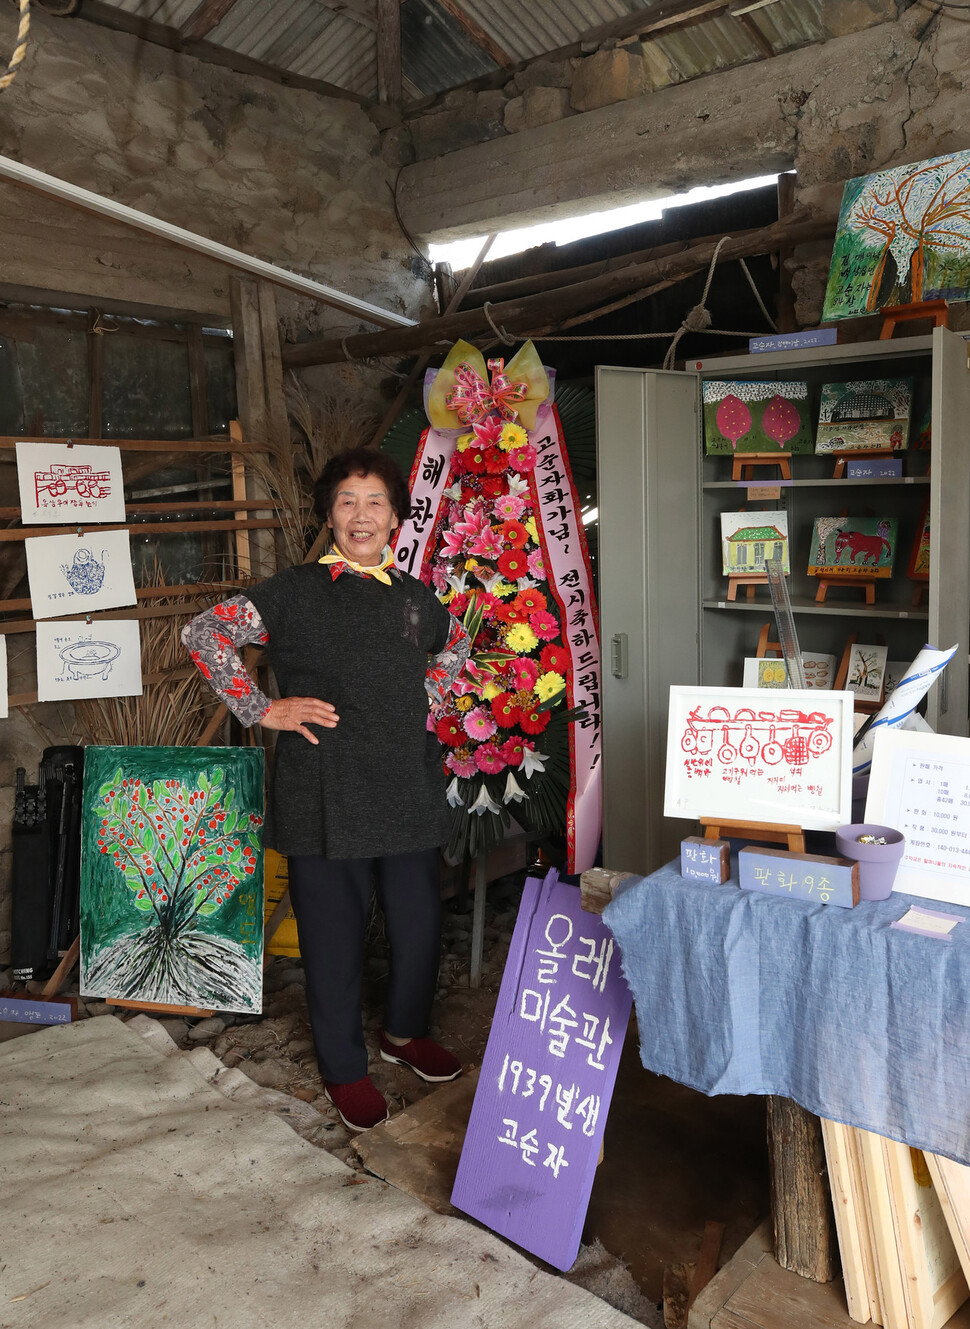 고순자 할망(84)이 자신의 집 고팡(창고)에 문을 연 올레미술관에서 멋지게 포즈를 잡고 있다. 백소아 기자 thanks@hani.co.kr